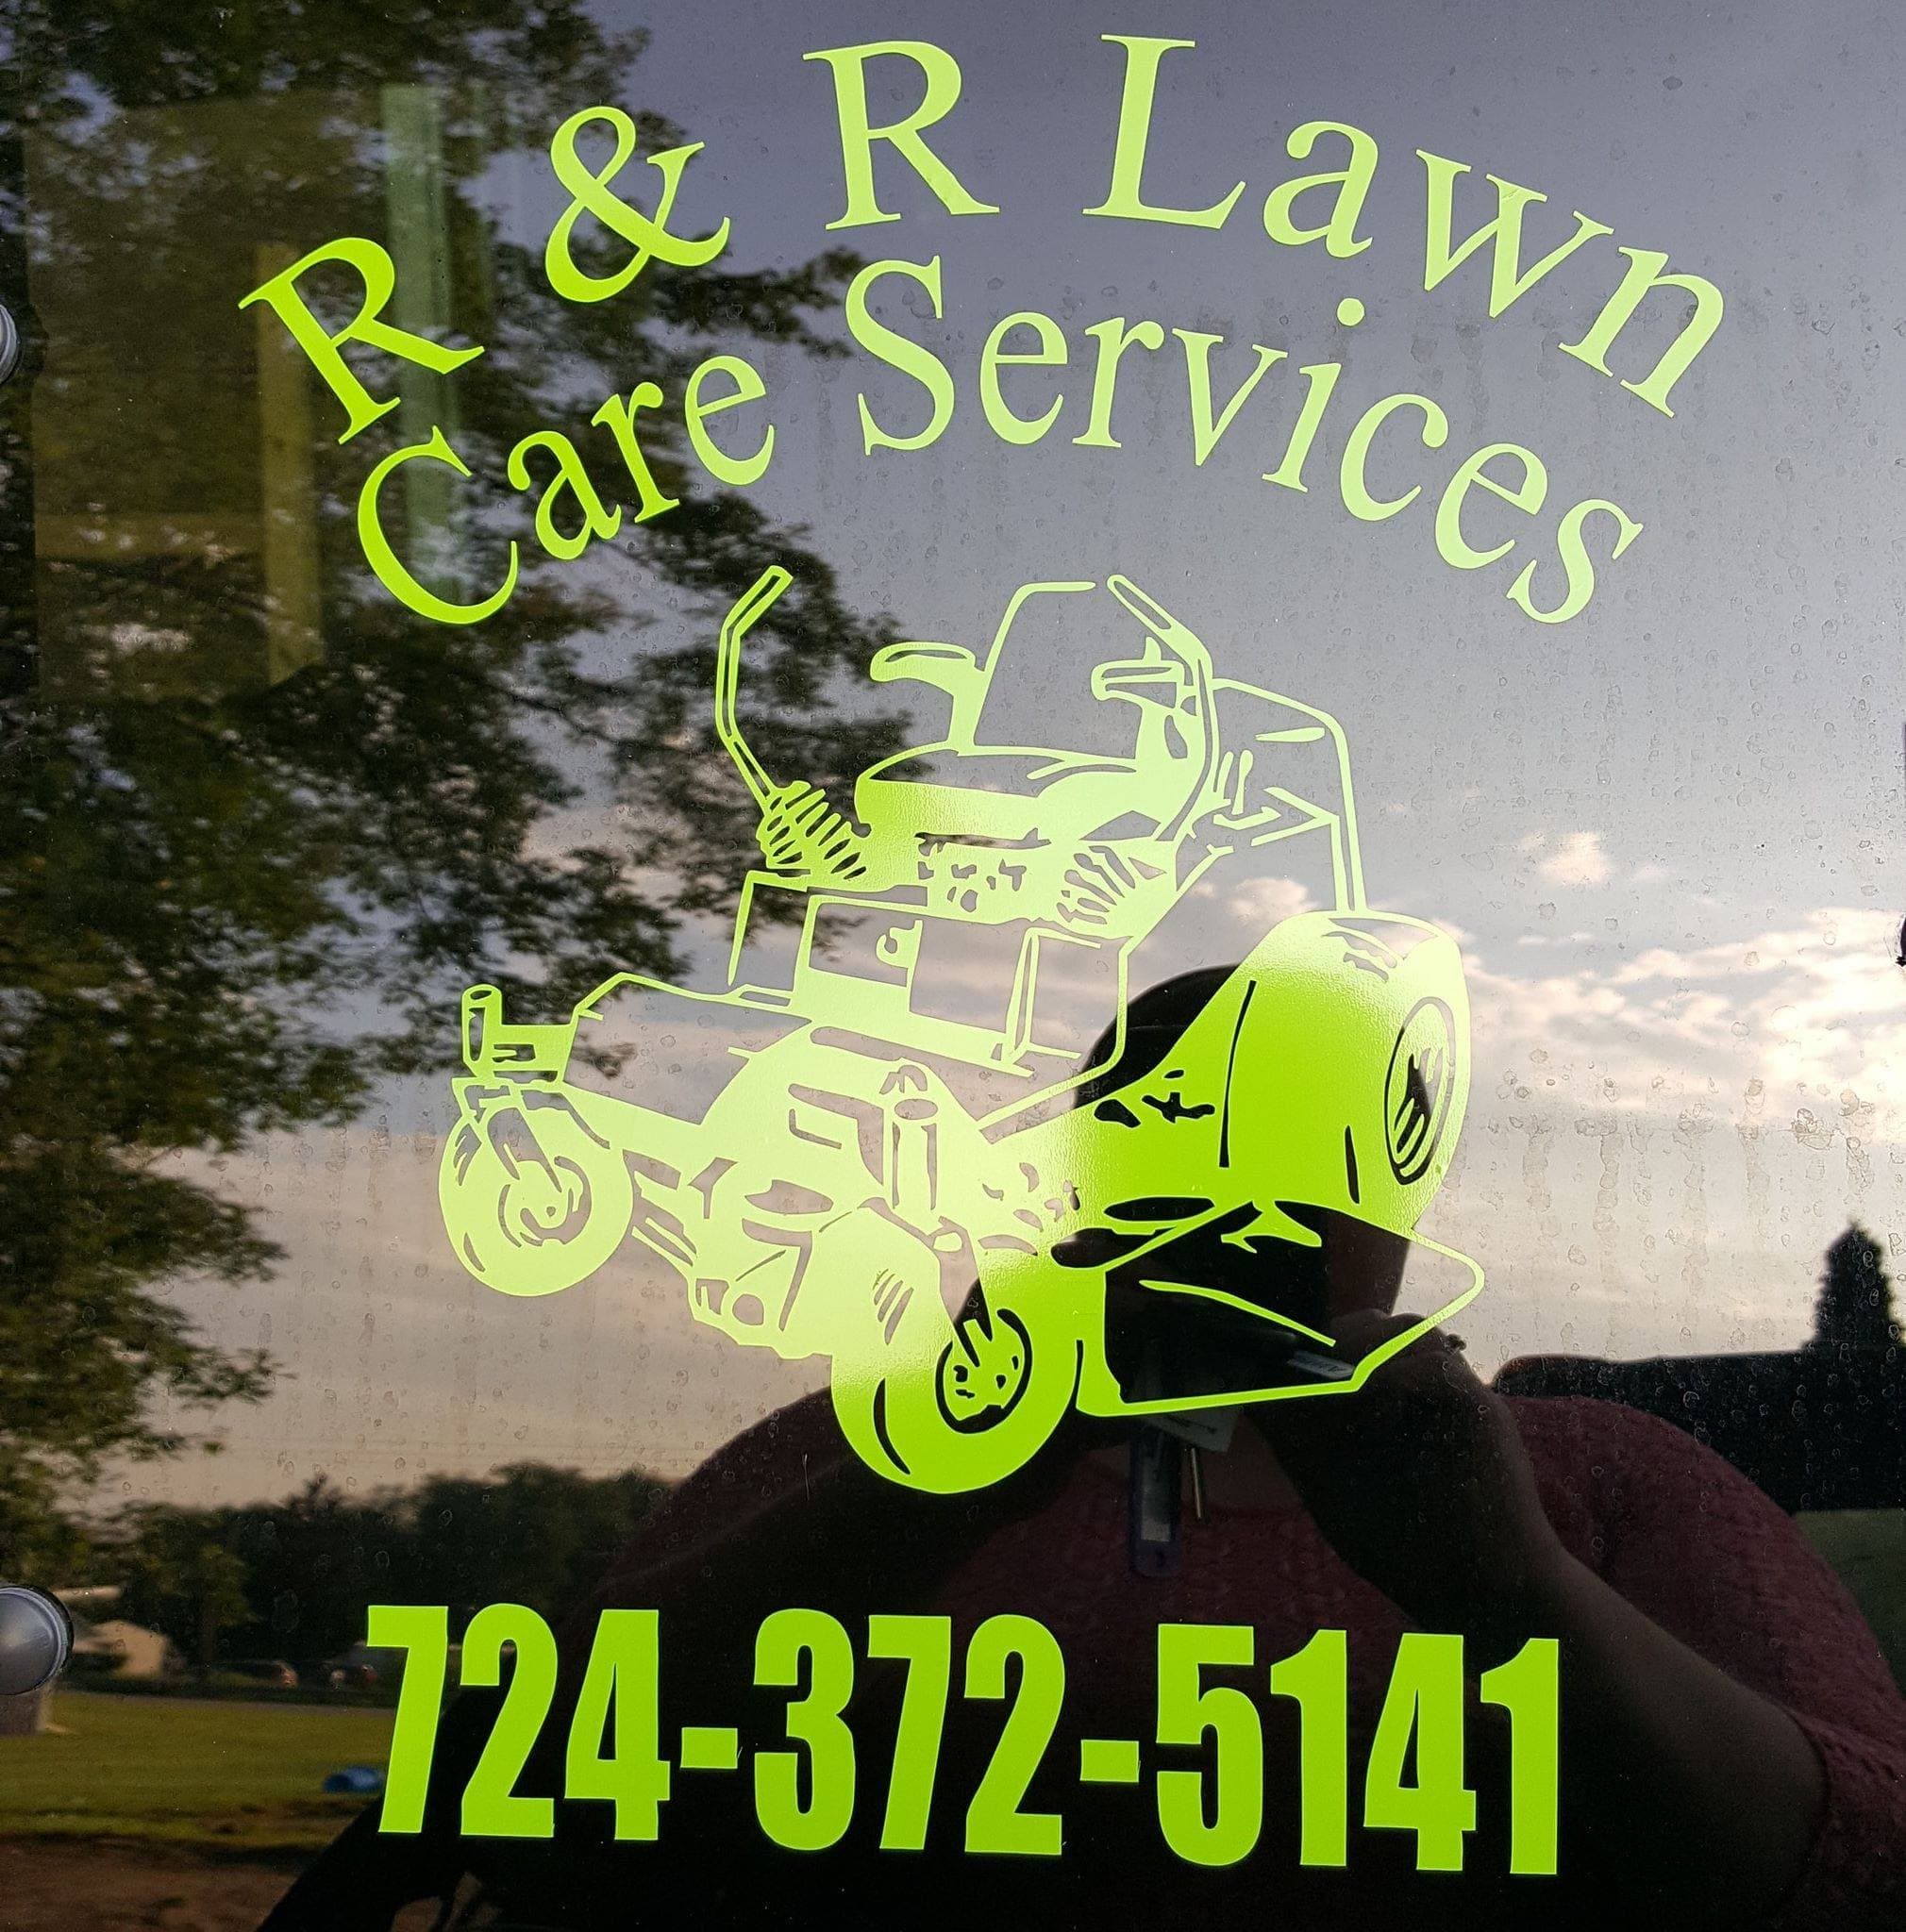 R&R Lawn Care Services